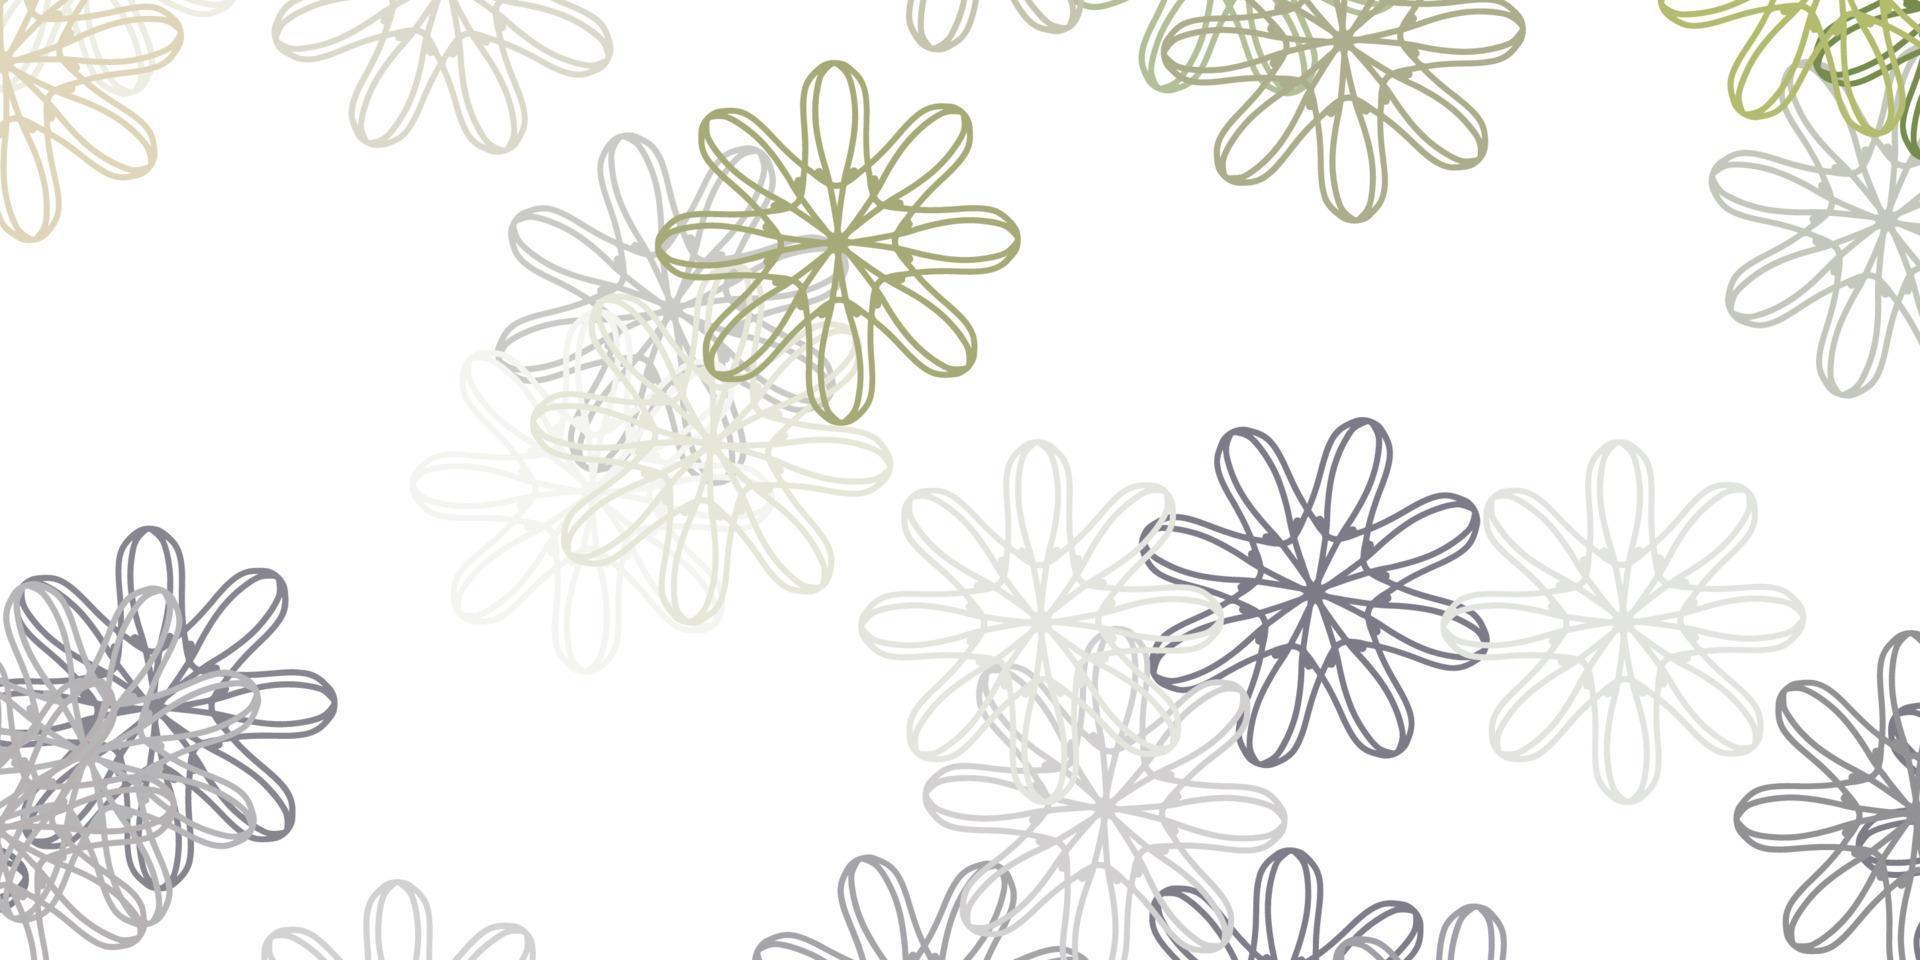 texture de doodle vecteur gris clair avec des fleurs.